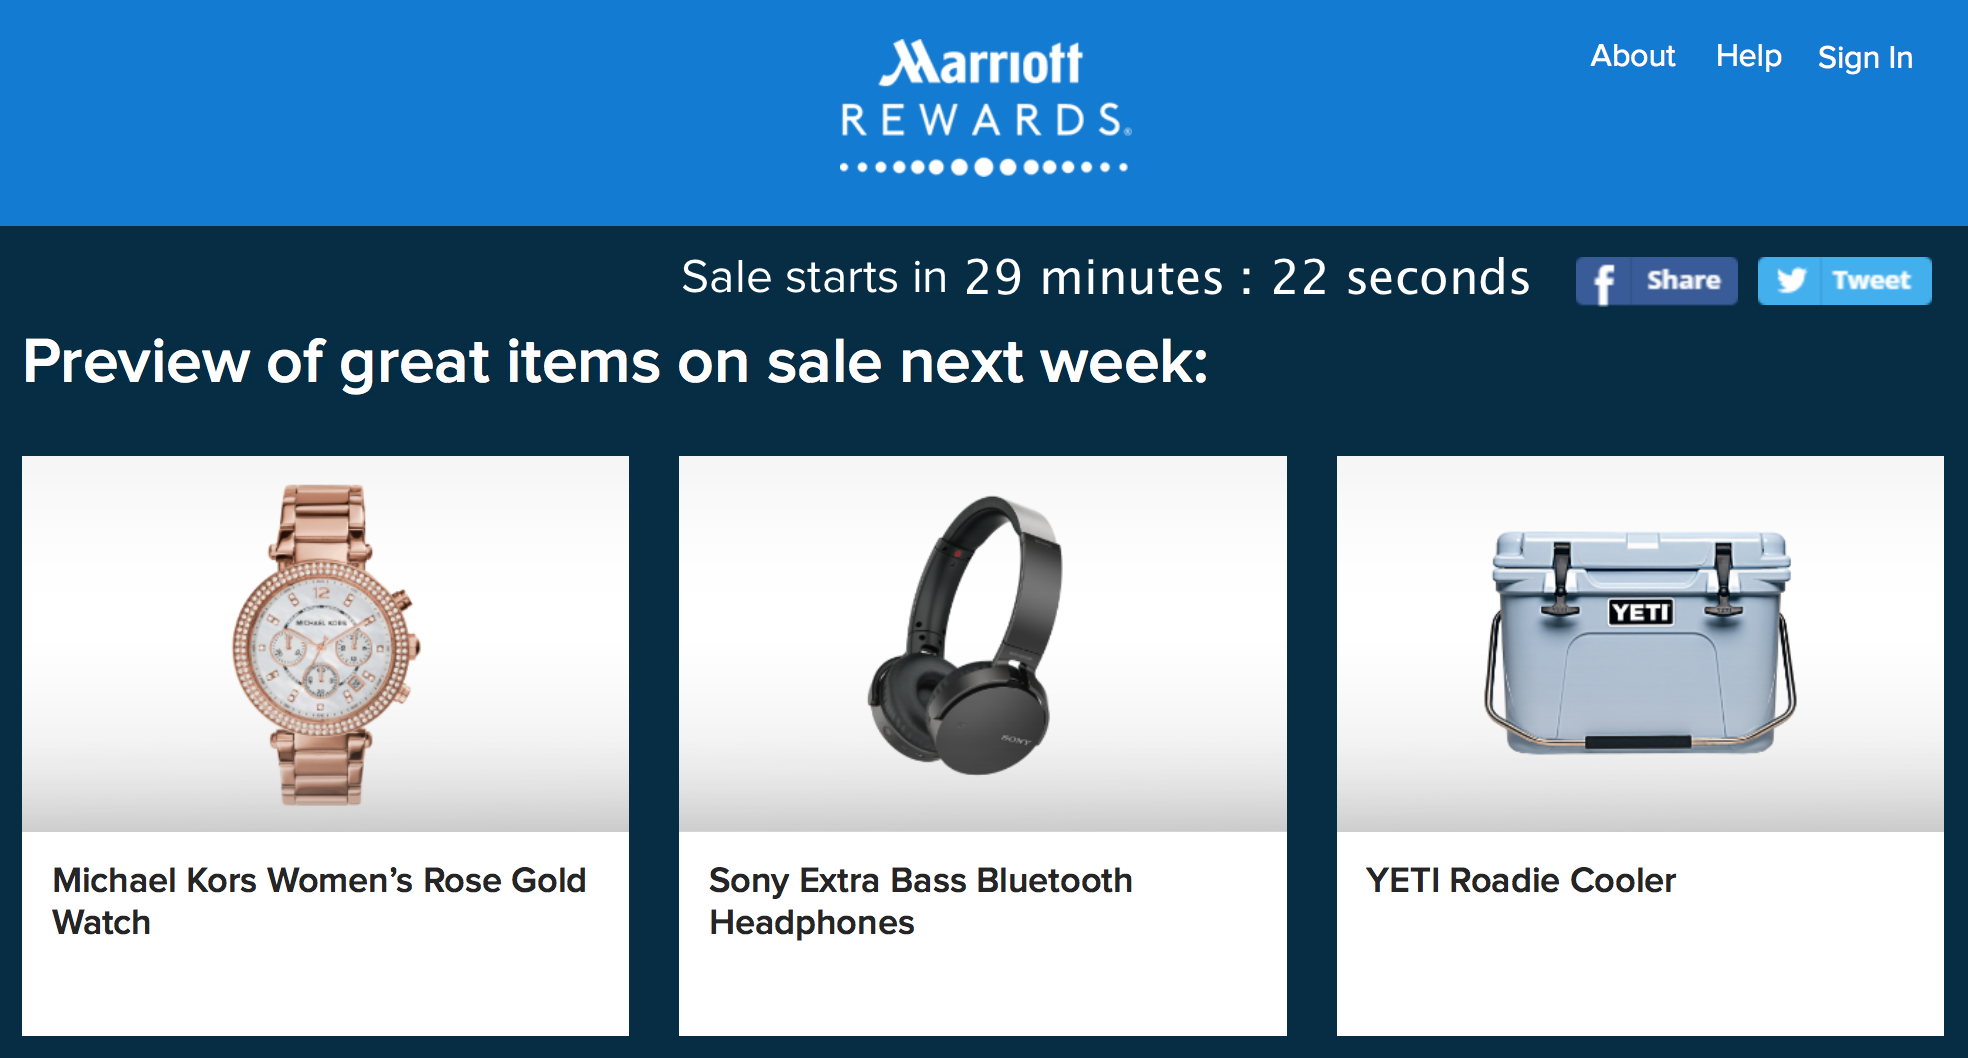 Marriott Rewards Flash Sale on Merchandise 2017